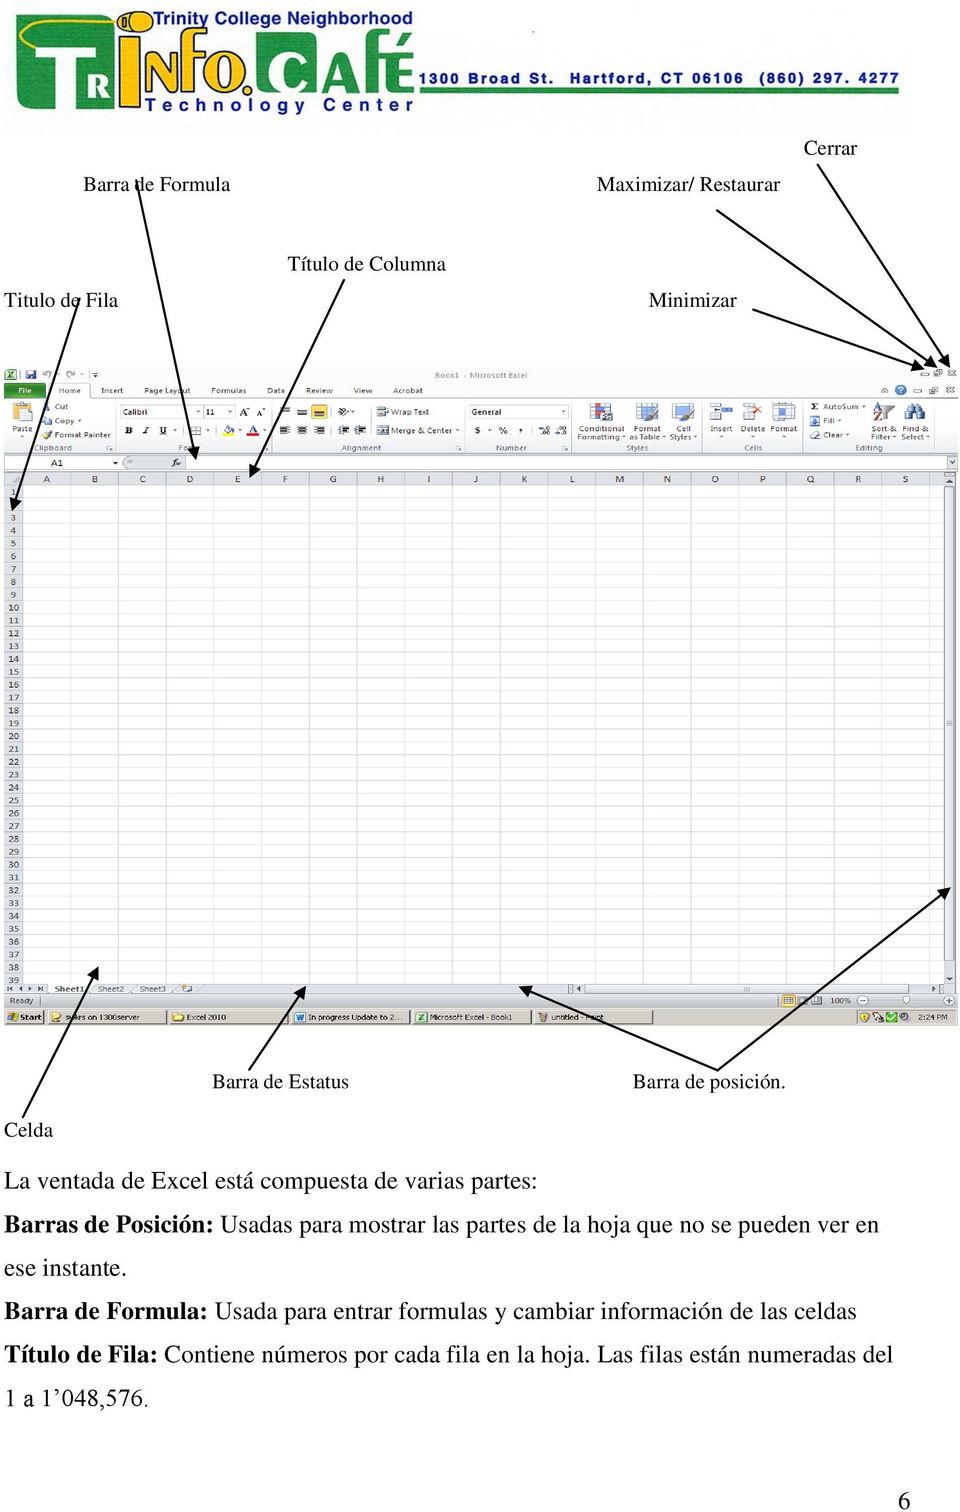 La ventada de Excel está compuesta de varias partes: Barras de Posición: Usadas para mostrar las partes de la hoja